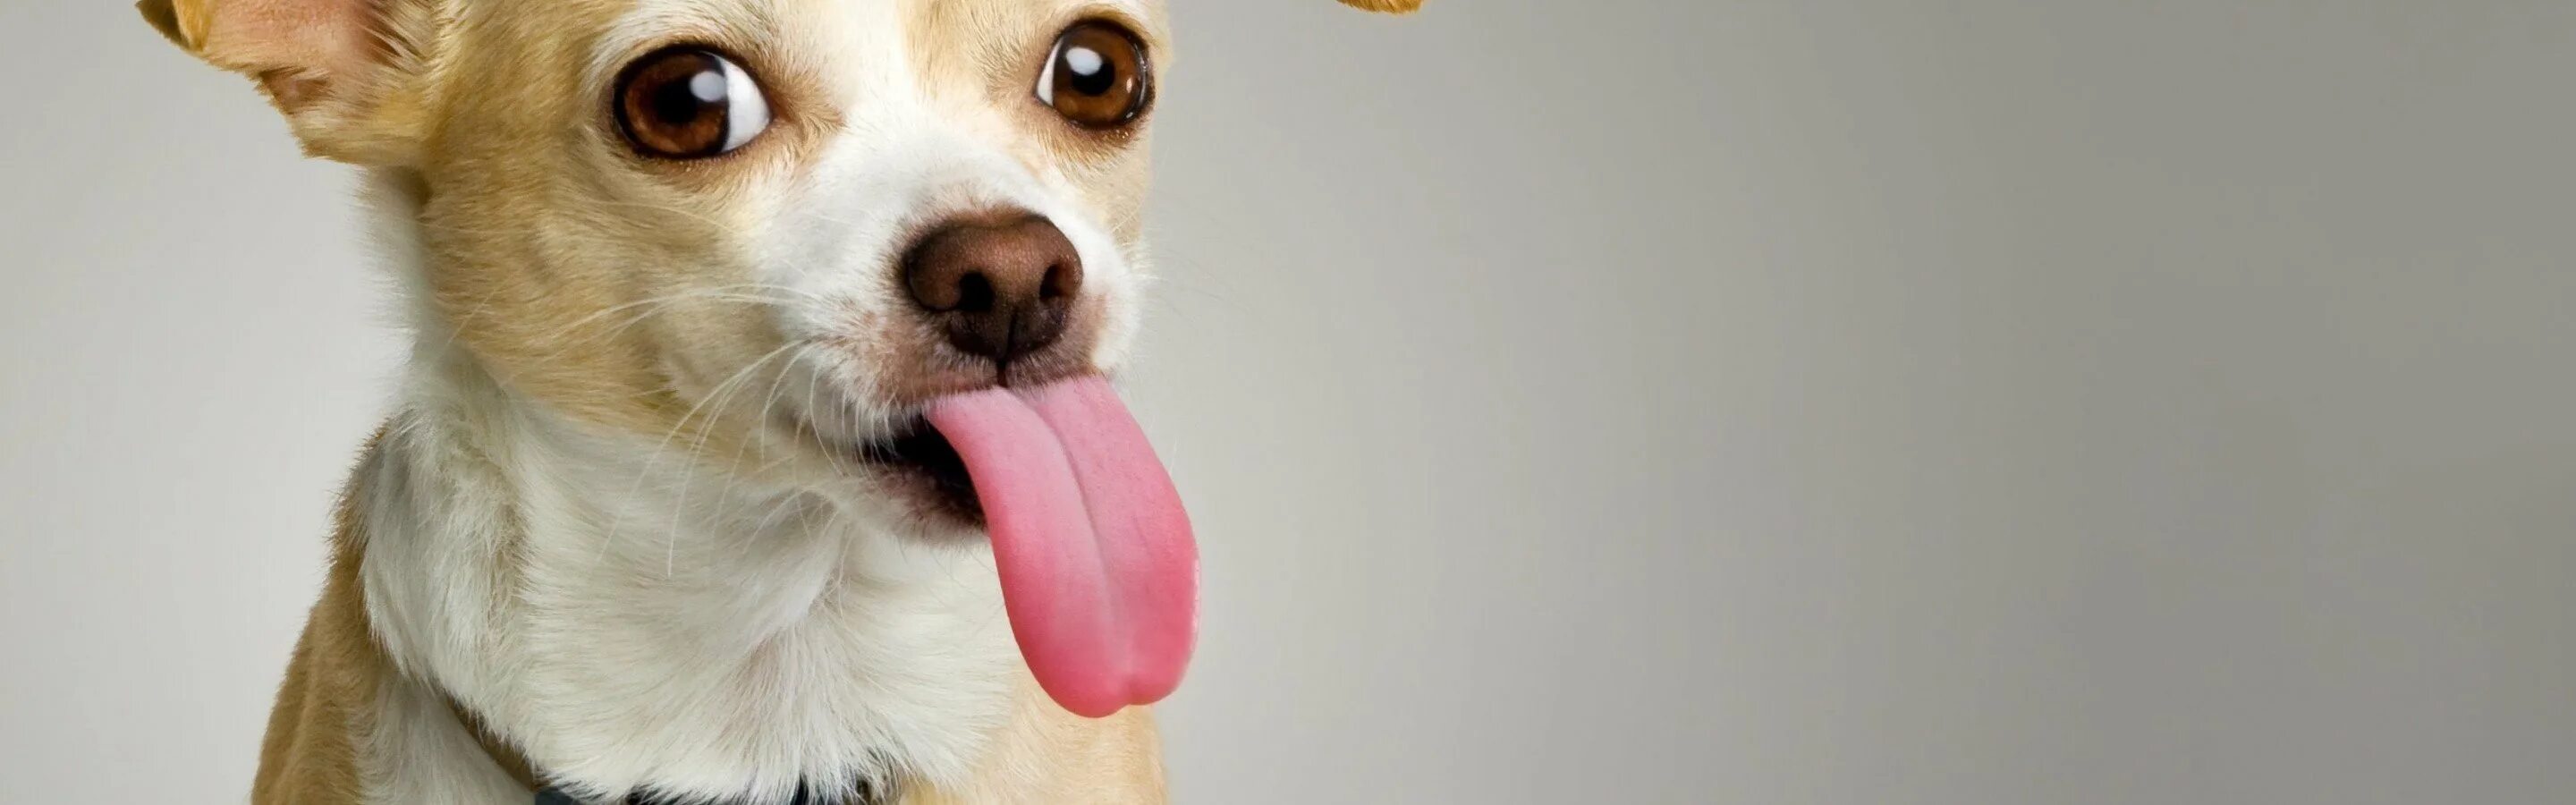 Собака с высунутым языком. Смешные собаки. Фото собаки с высунутым языком. Смешная собака на белом фоне.